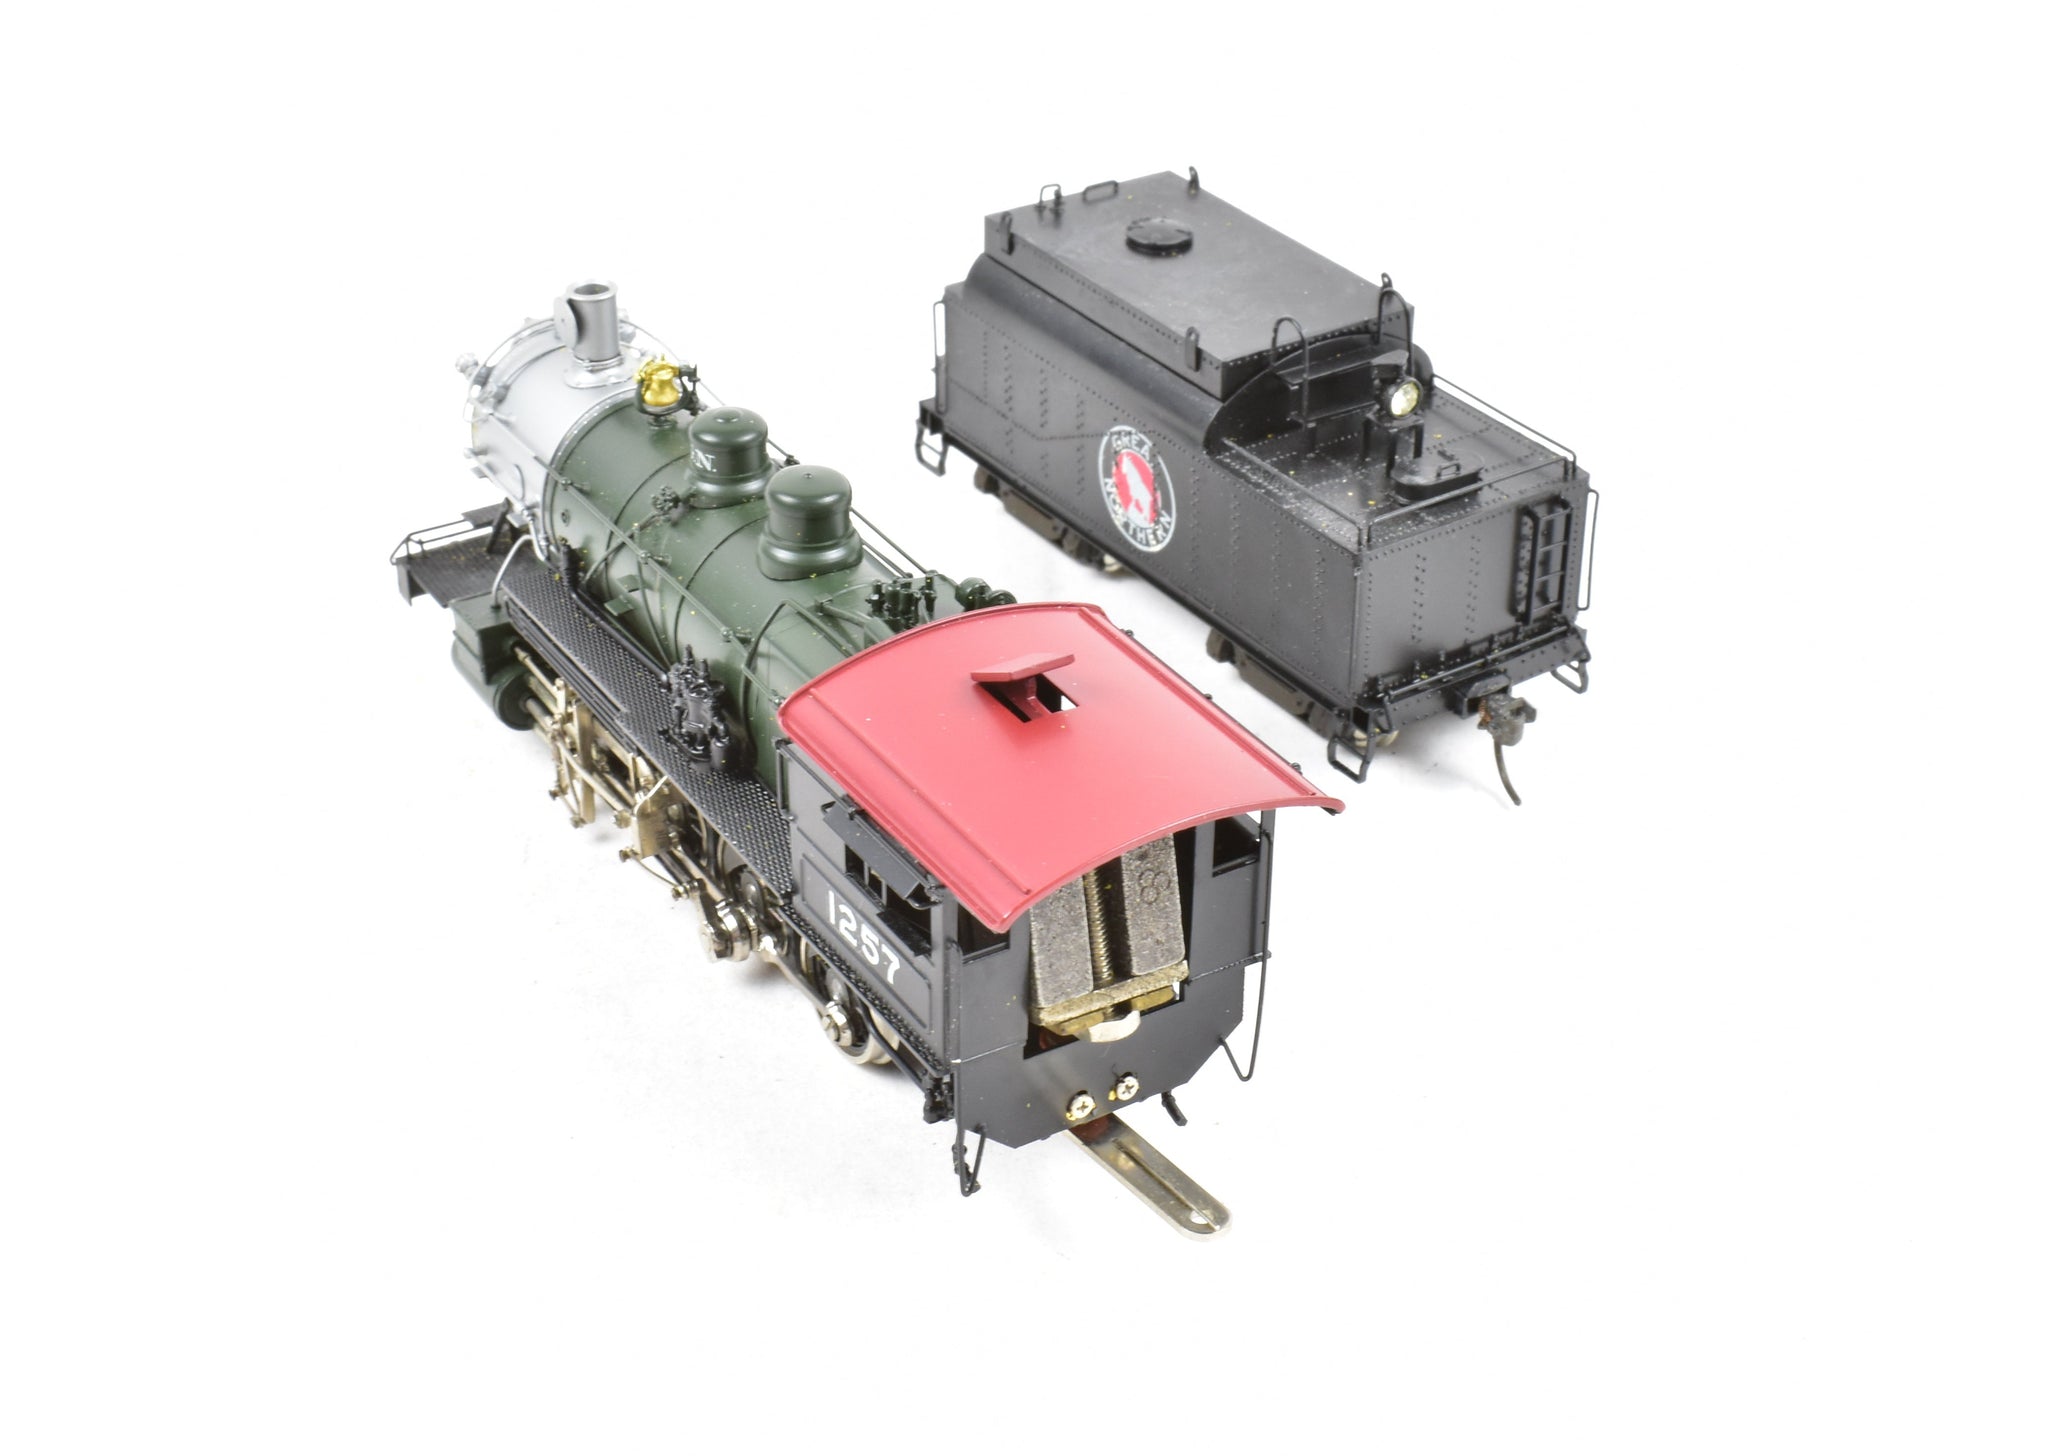 HO Scale Tenshodo 0-8-0 Tank Steam Locomotive Brass Japan